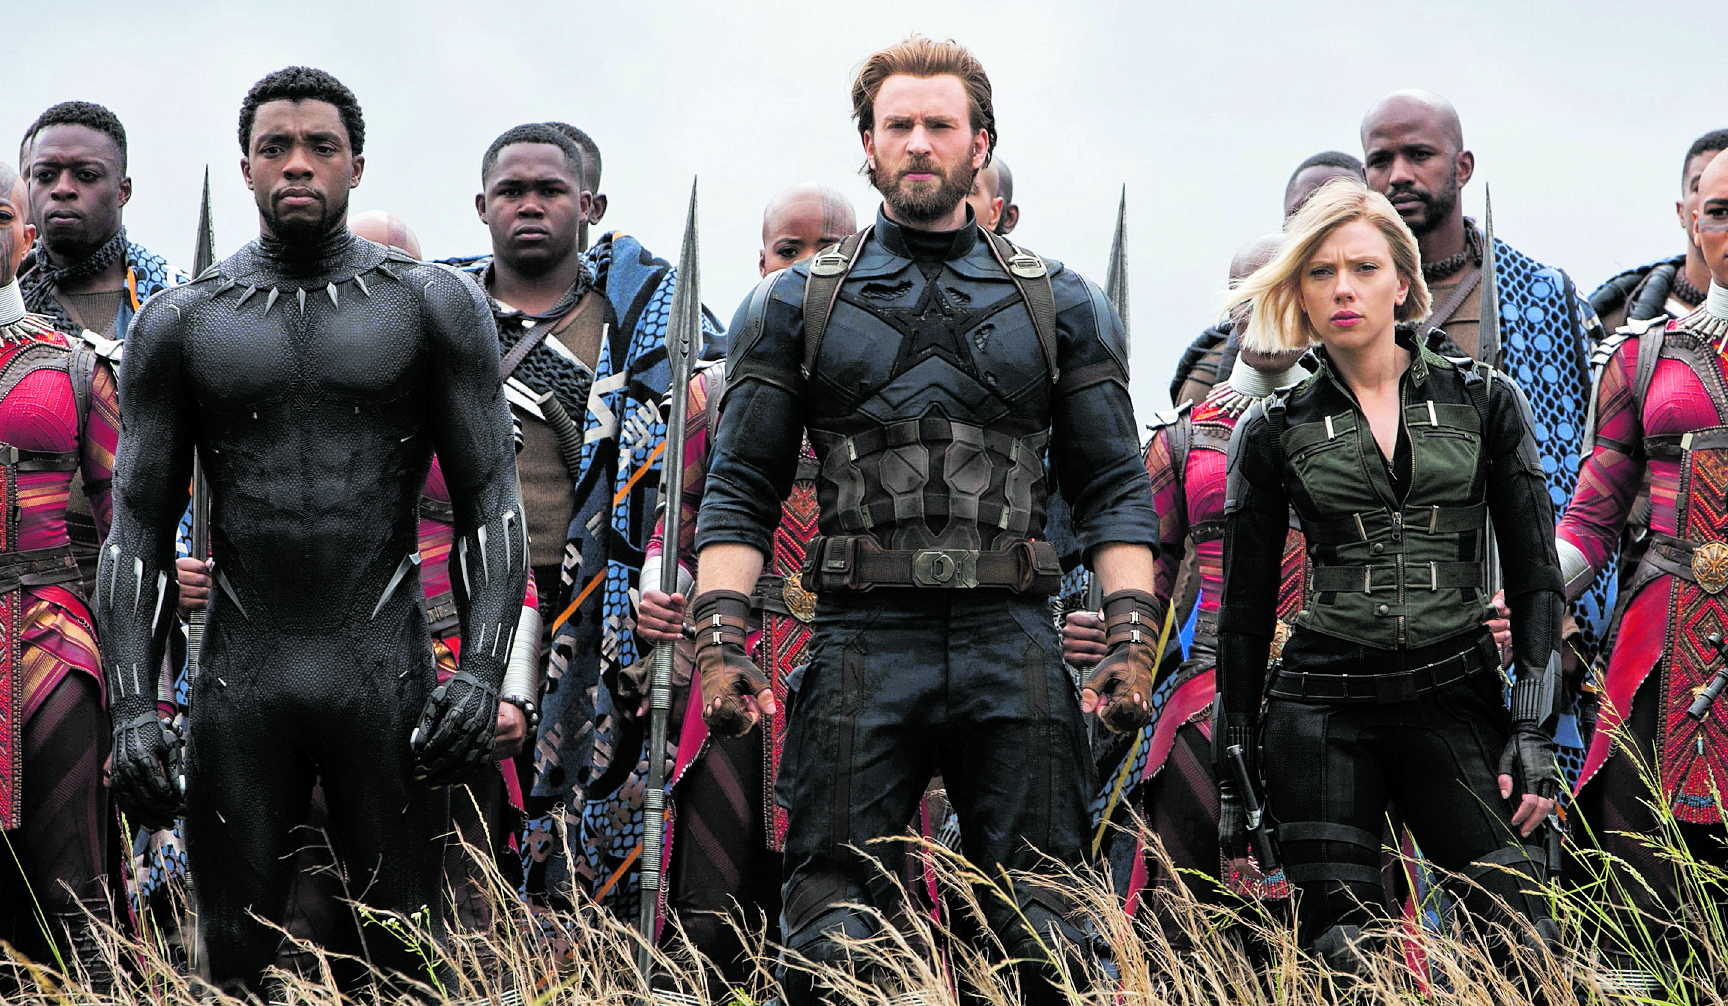 El próximo estreno de Avengers: Endgame podría determinar la ceremonia de los Óscar. (Foto Prensa Libre: Marvel Studios)